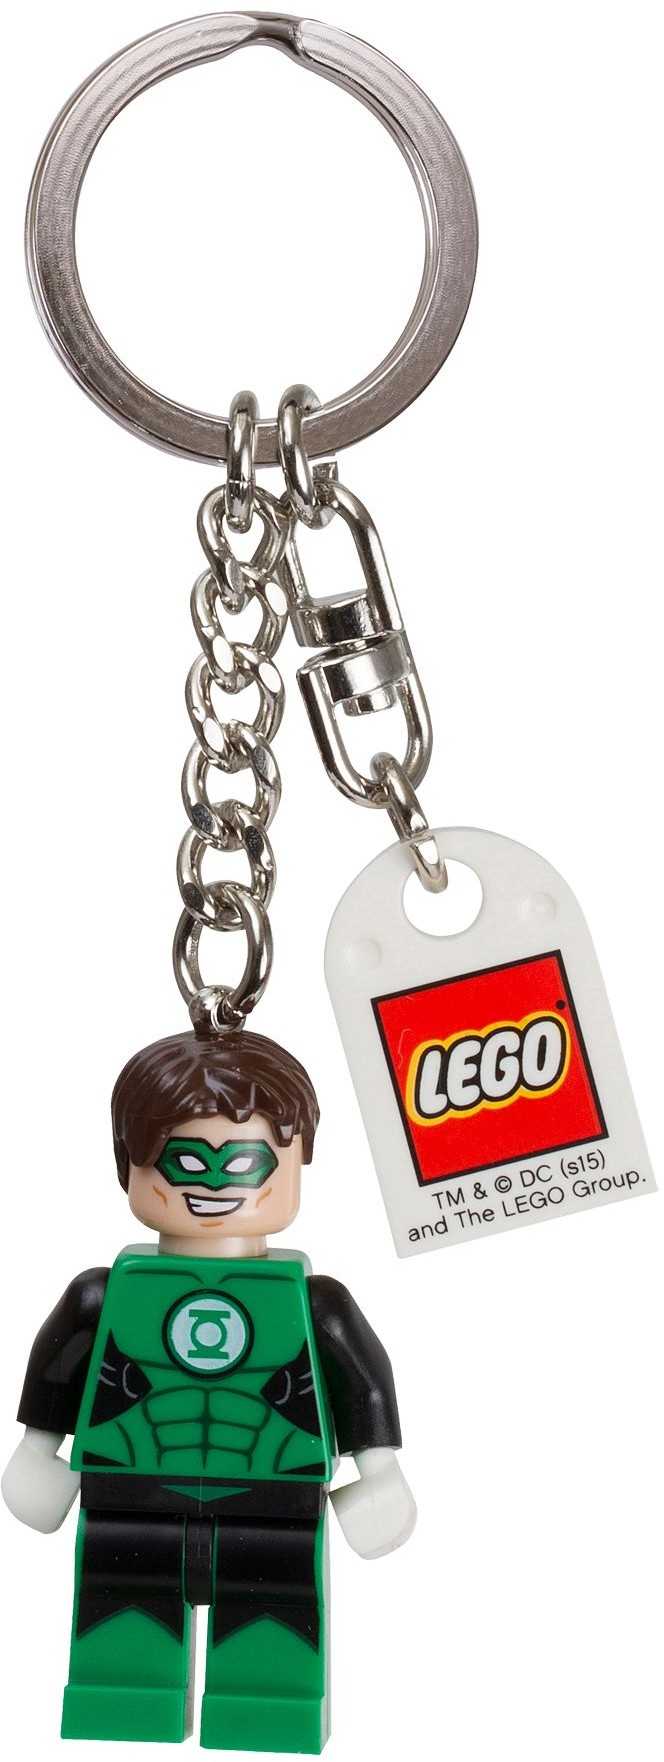 The HULK Key Chain LEGO Super Heroes Key Ring